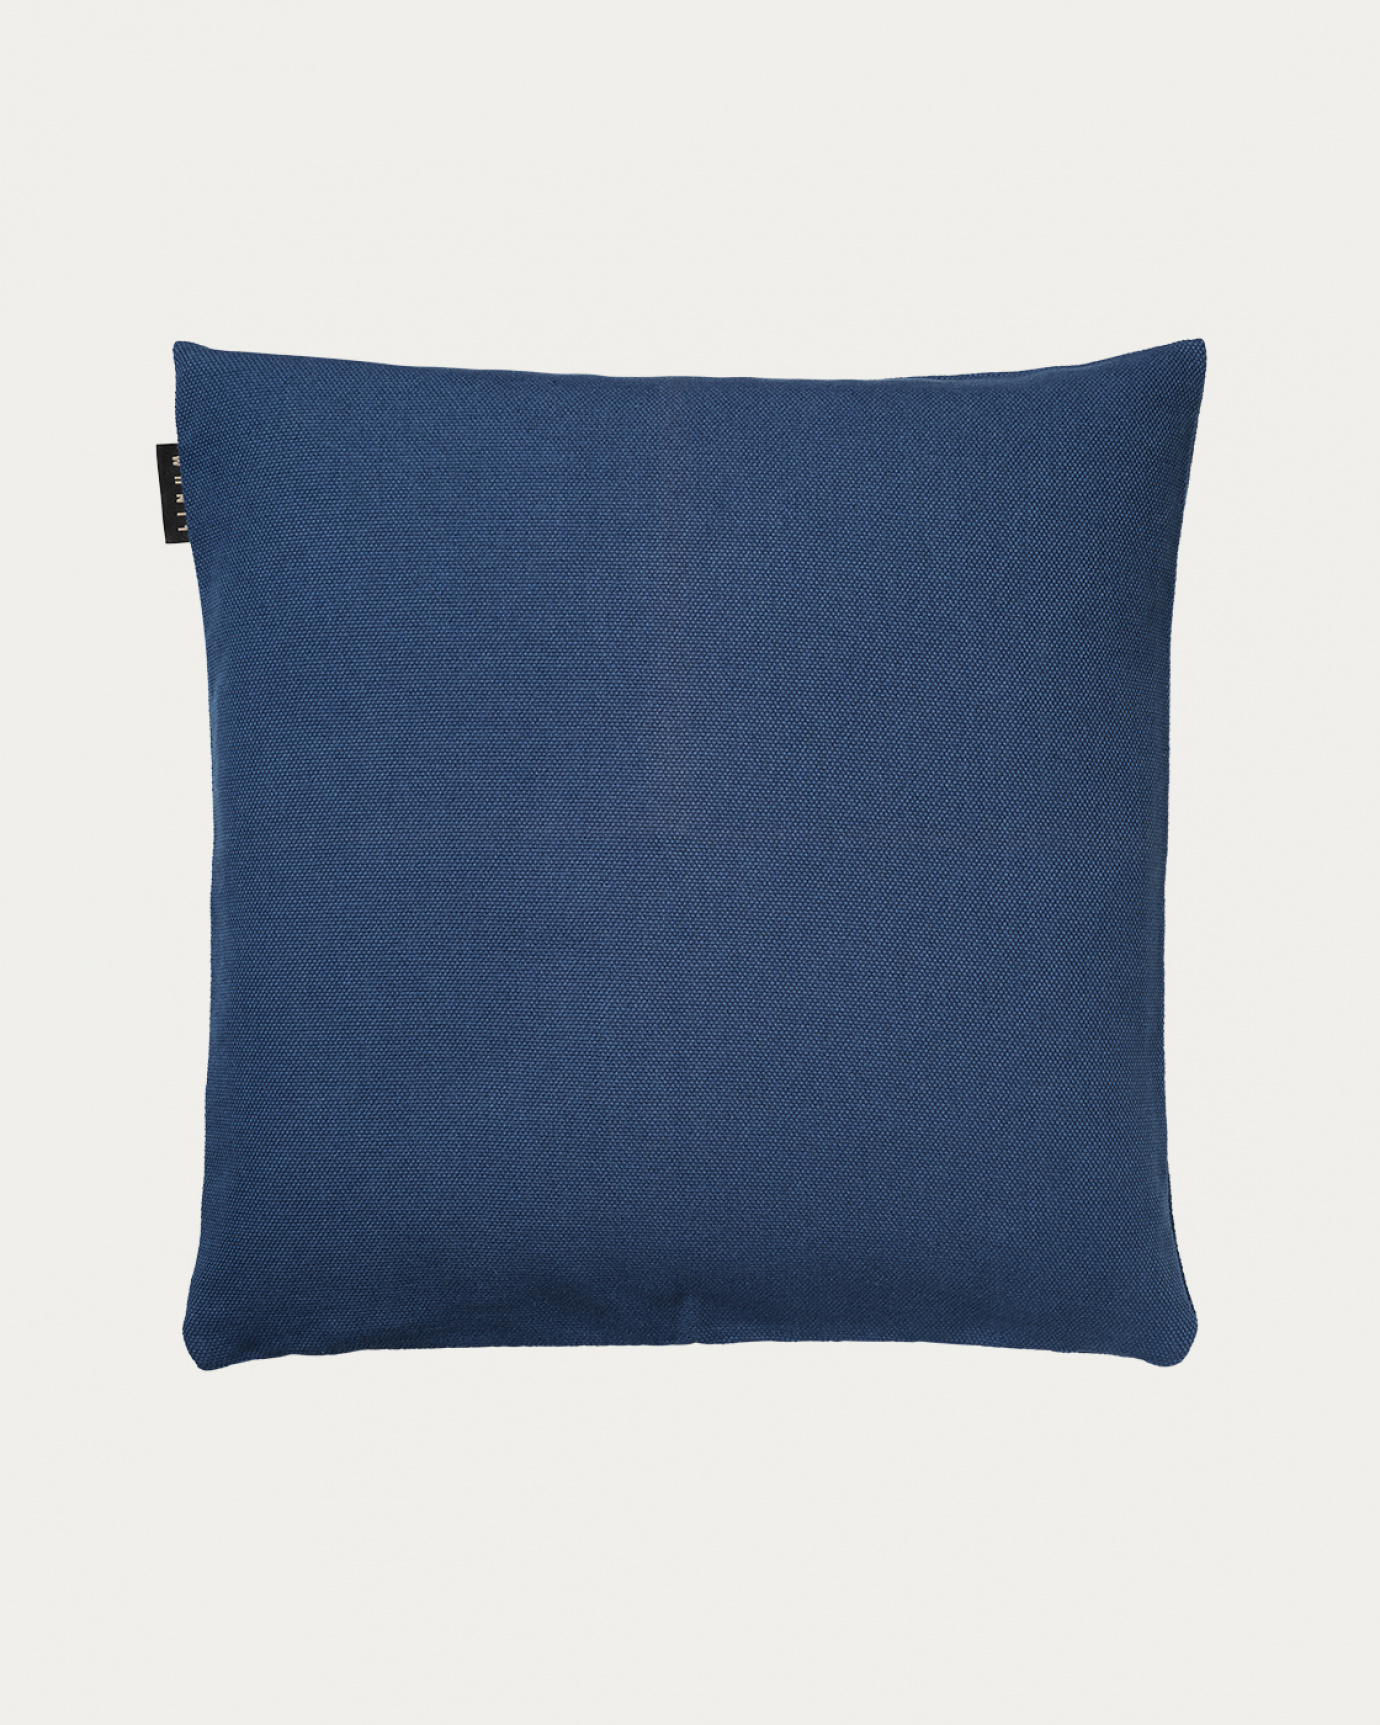 Image du produit housse de coussin PEPPER bleu nuit en coton doux de LINUM DESIGN. Facile à laver et durable pendant des générations. Taille 50 x 50 cm.